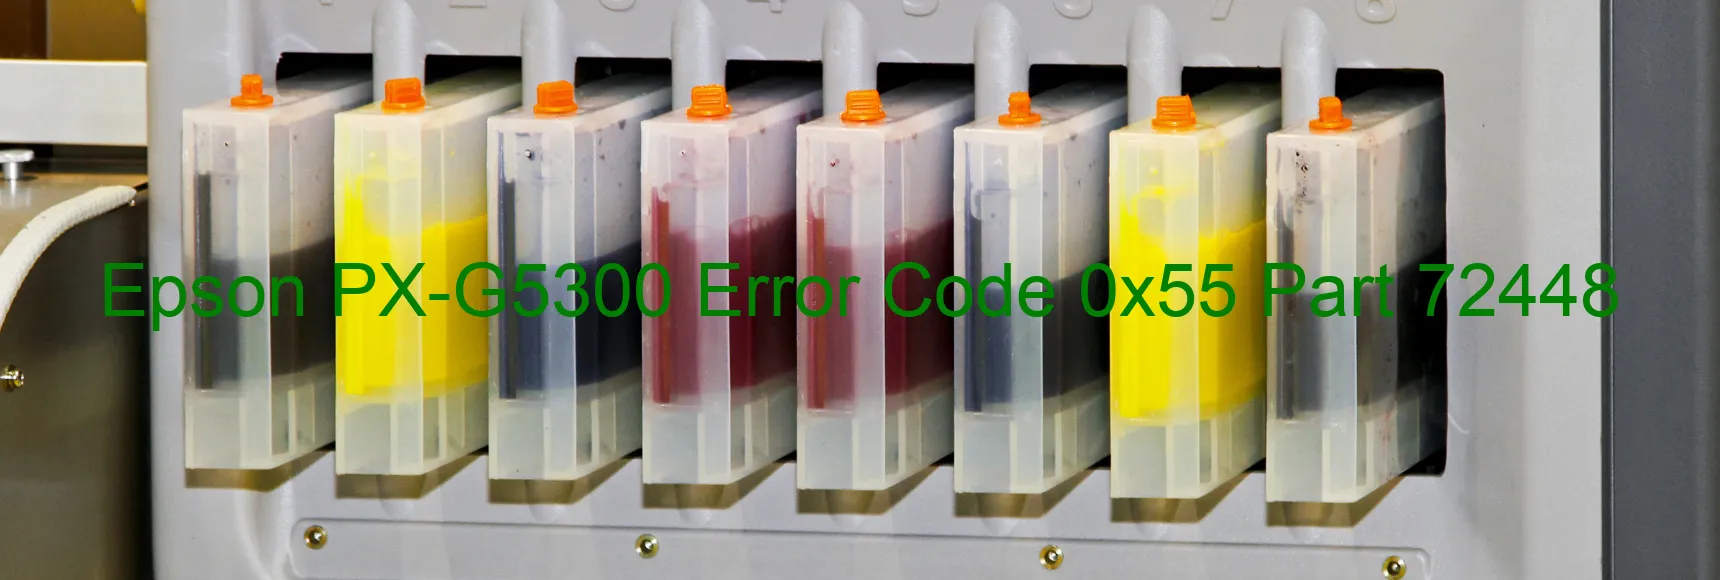 Epson PX-G5300 Error Code 0x55 Part 72448